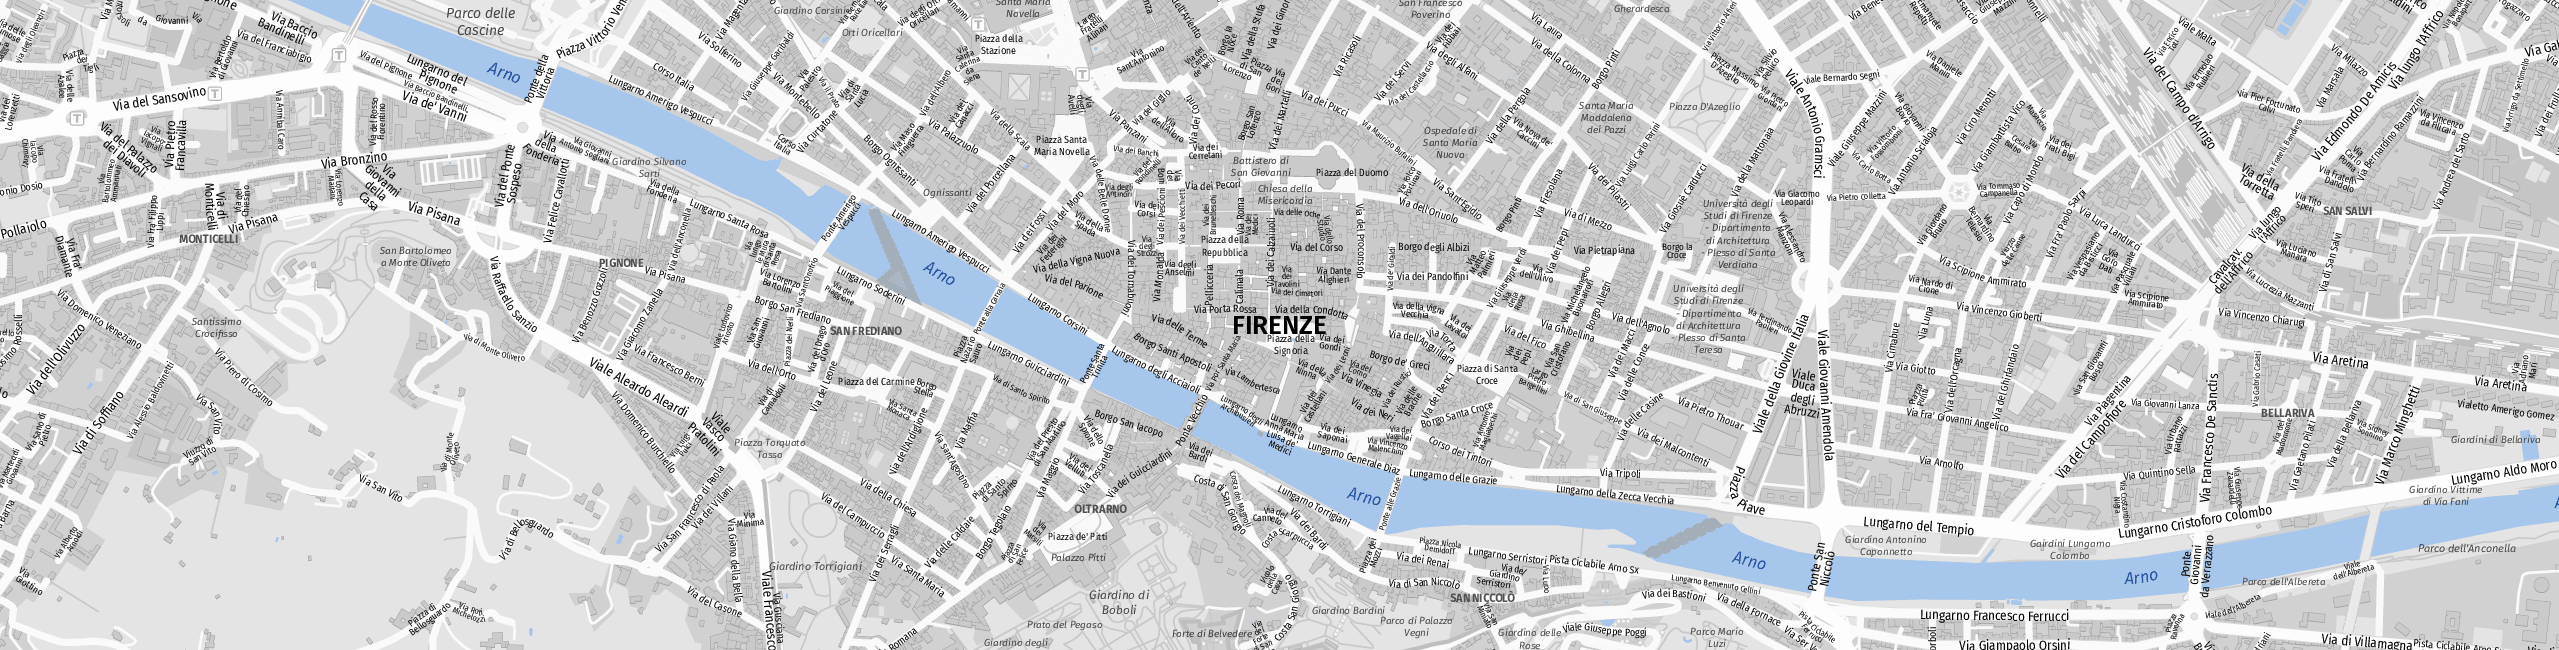 Stadtplan Firenze zum Downloaden.